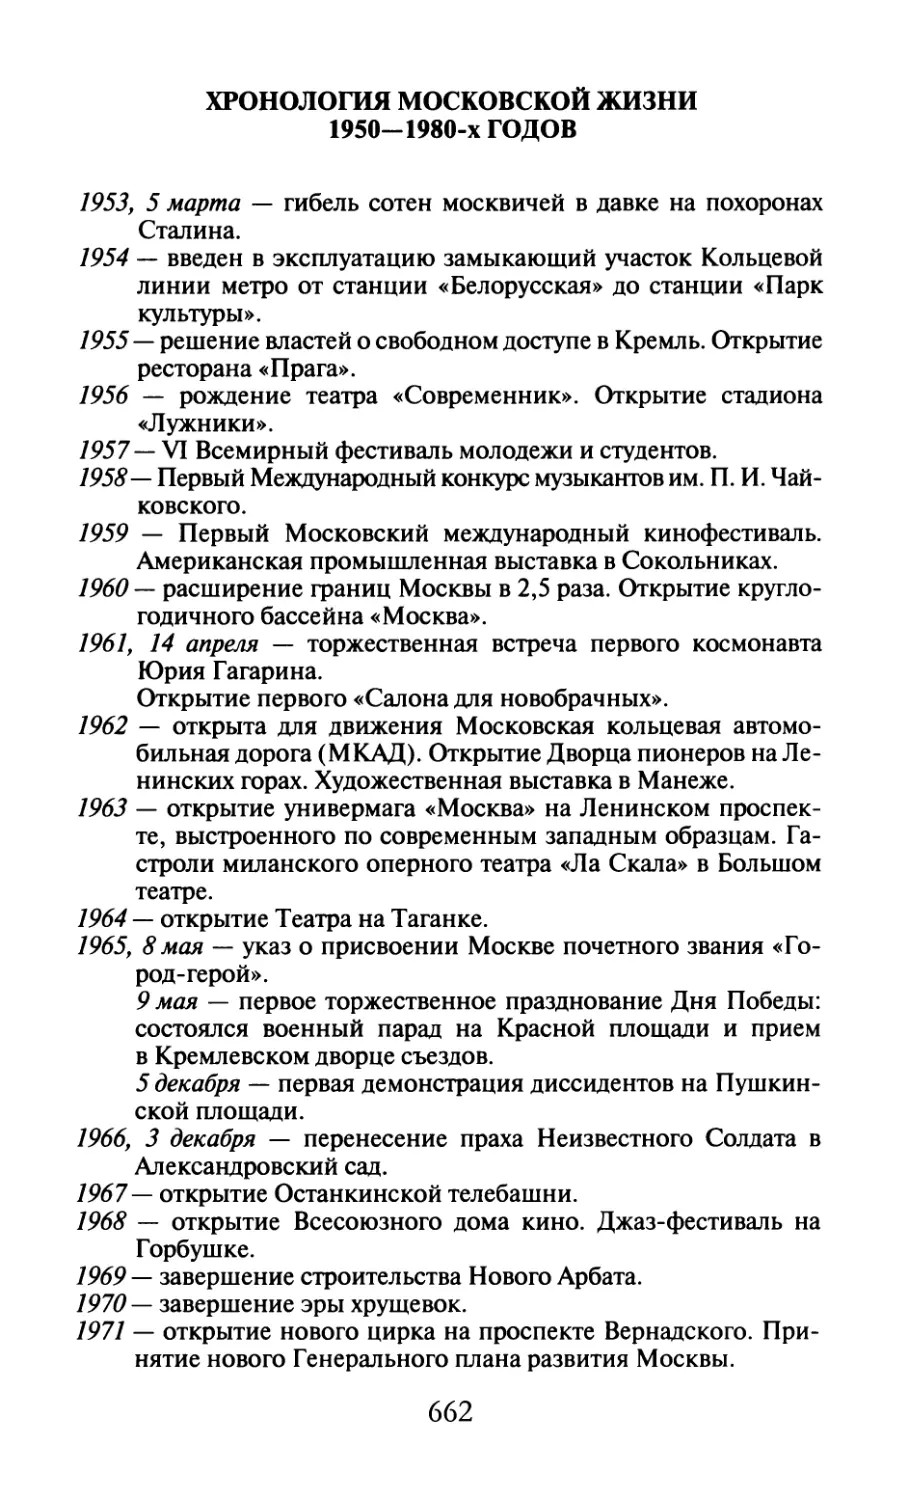 Хронология московской жизни 1950—1980-х годов